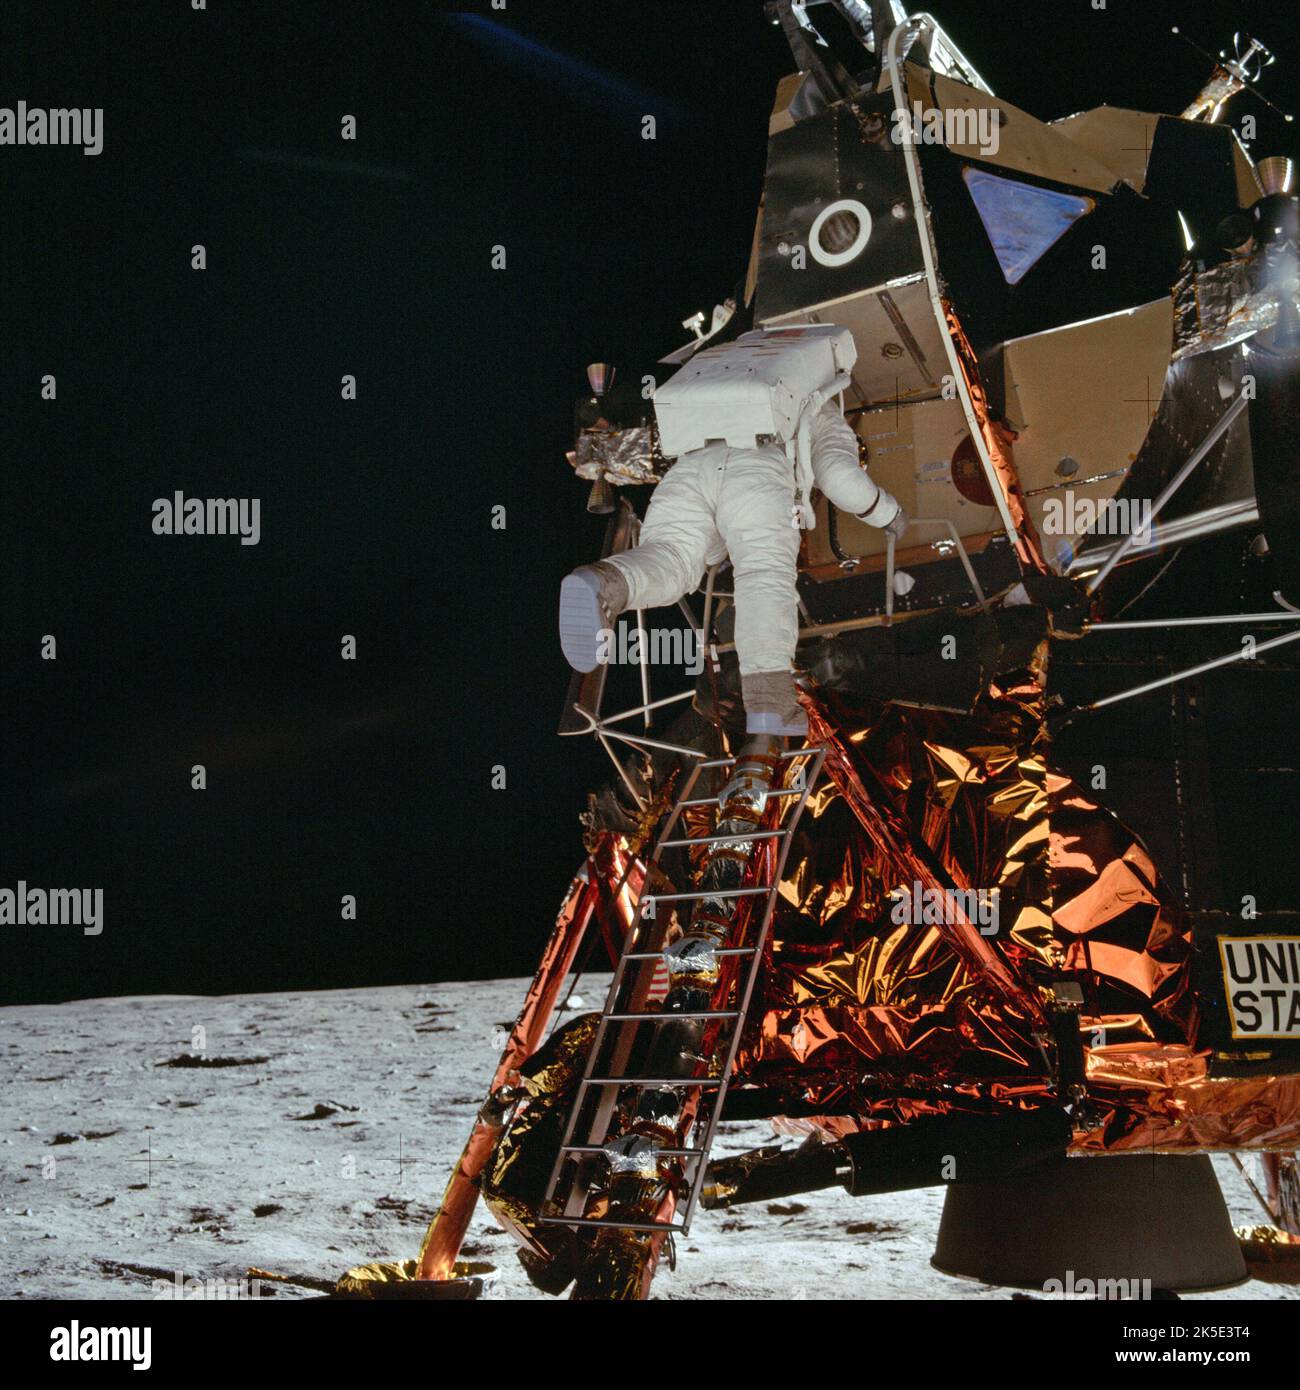 Apollo 11. Primo sbarco sulla luna, 20 luglio 1969. Qui, l'astronauta Buzz Aldrin si stacca dalla scala dal modulo lunare e si affaccia sulla superficie lunare. Foto dell'astronauta Neil Armstrong, che per 18 minuti era stato l'unico umano ad aver messo piede sulla luna. Dopo che questa foto è stata scattata, gli esseri umani nel plurale hanno raggiunto questo obiettivo. Per questo motivo, forse questa è una delle foto più convincenti di tutti gli sbarchi sulla luna. Un'immagine NASA temporizzata. Credito: NASA Foto Stock